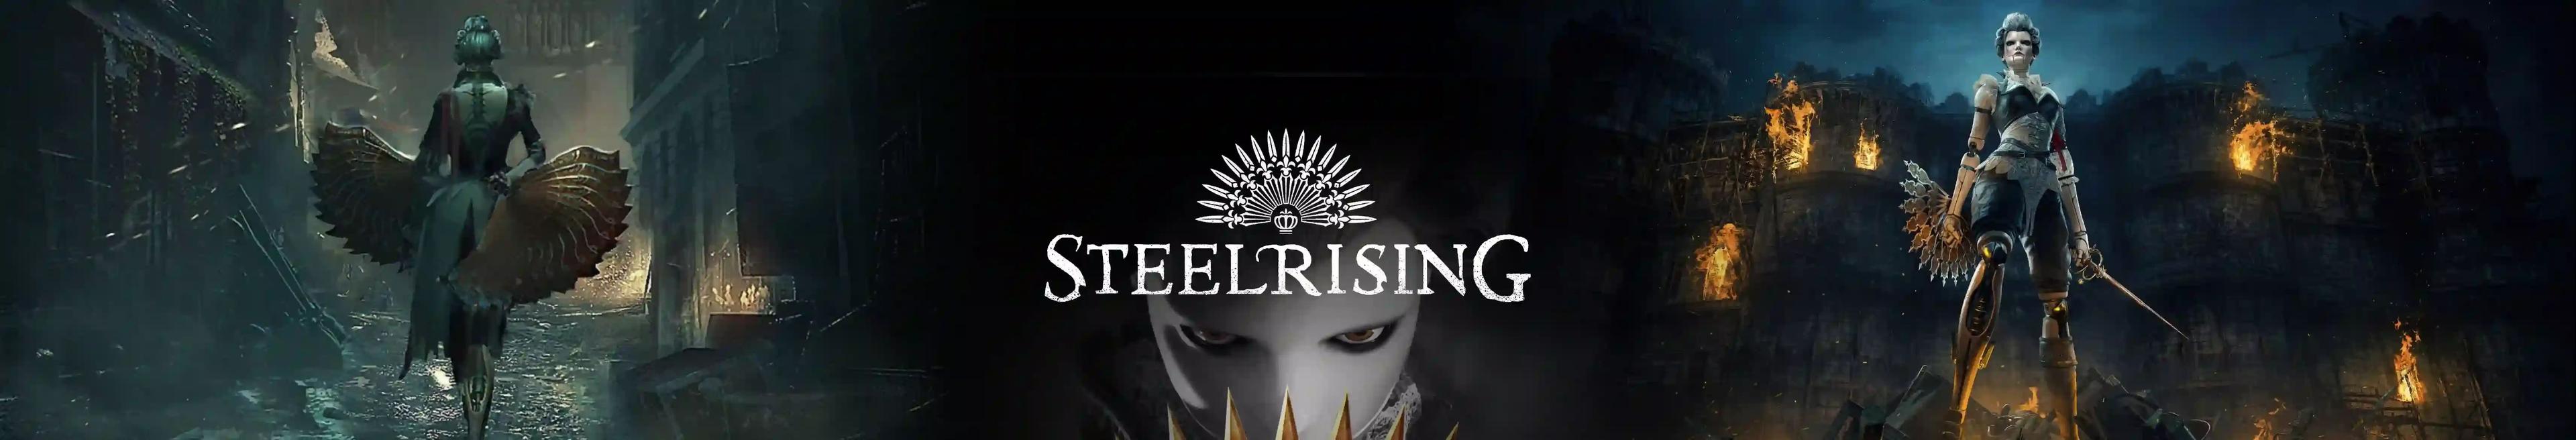 Steelrising desktop